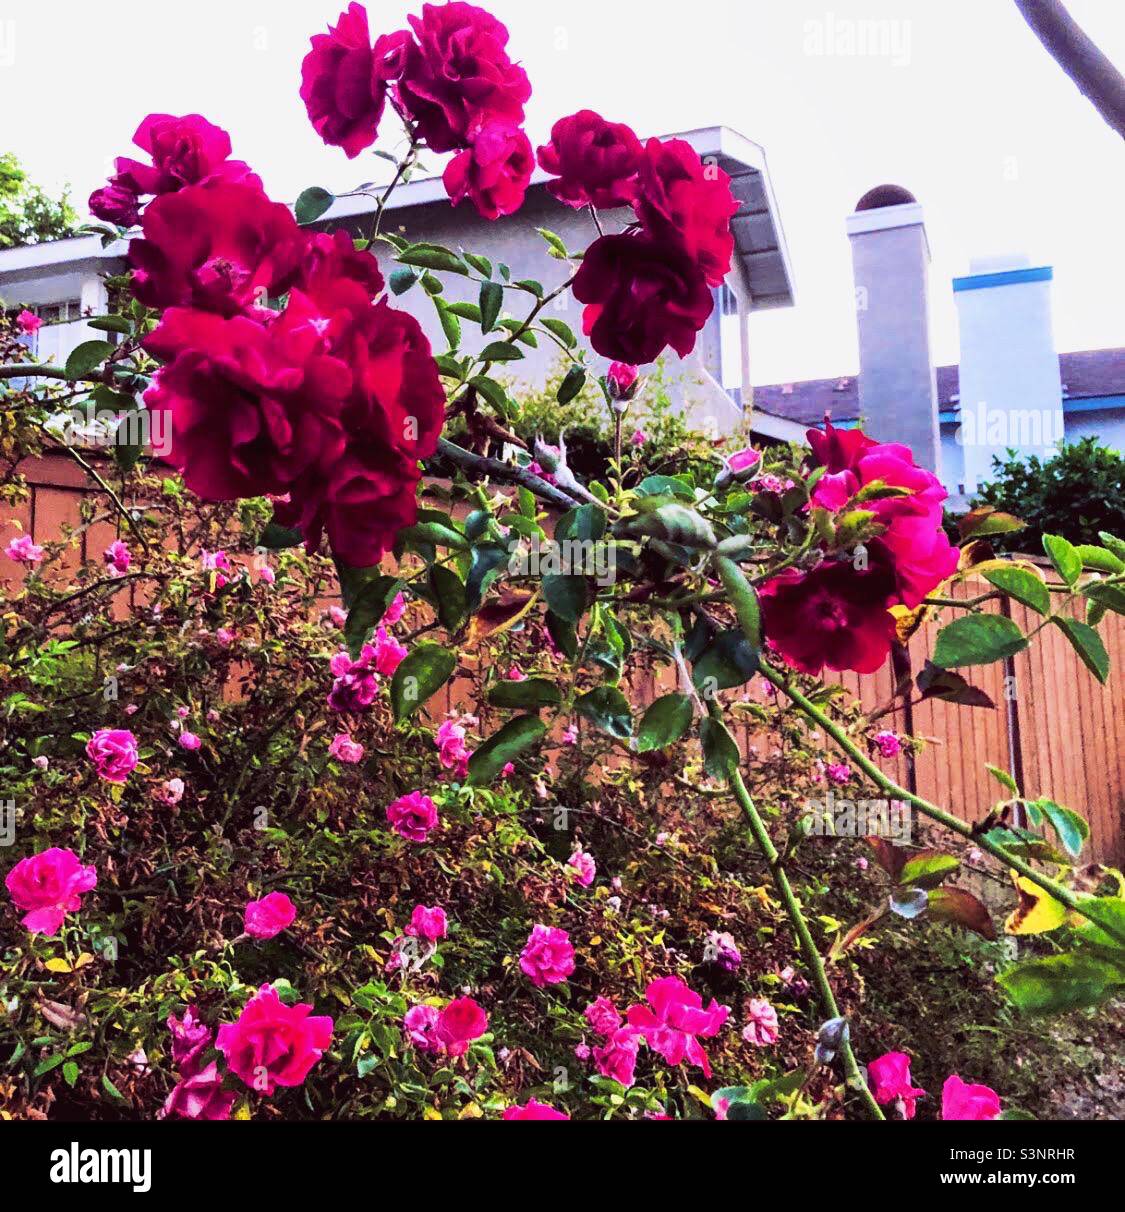 Neighborhood florals in bloom Stock Photo